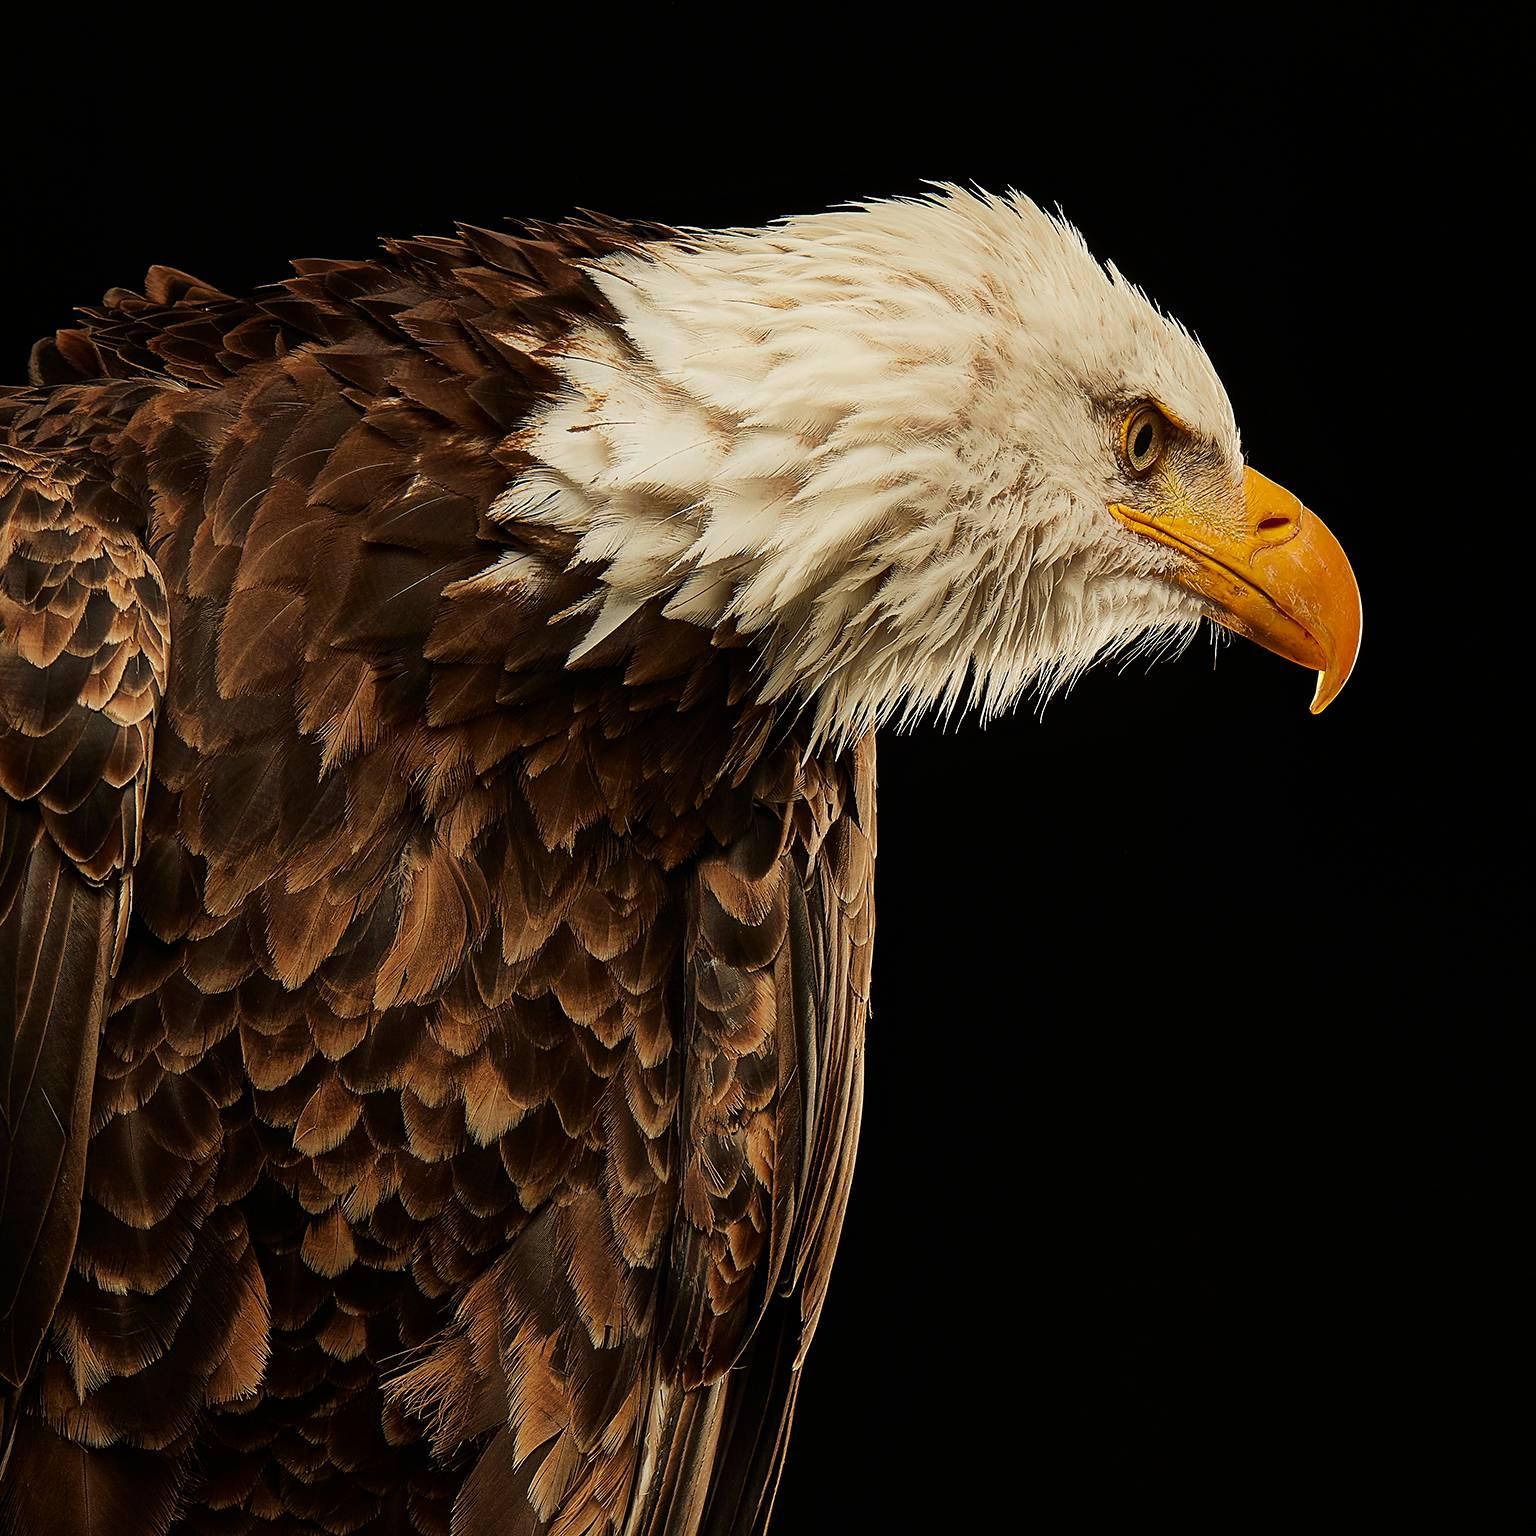 Birds of Prey Bald Eagle No. 17 - Photograph by Chris Gordaneer